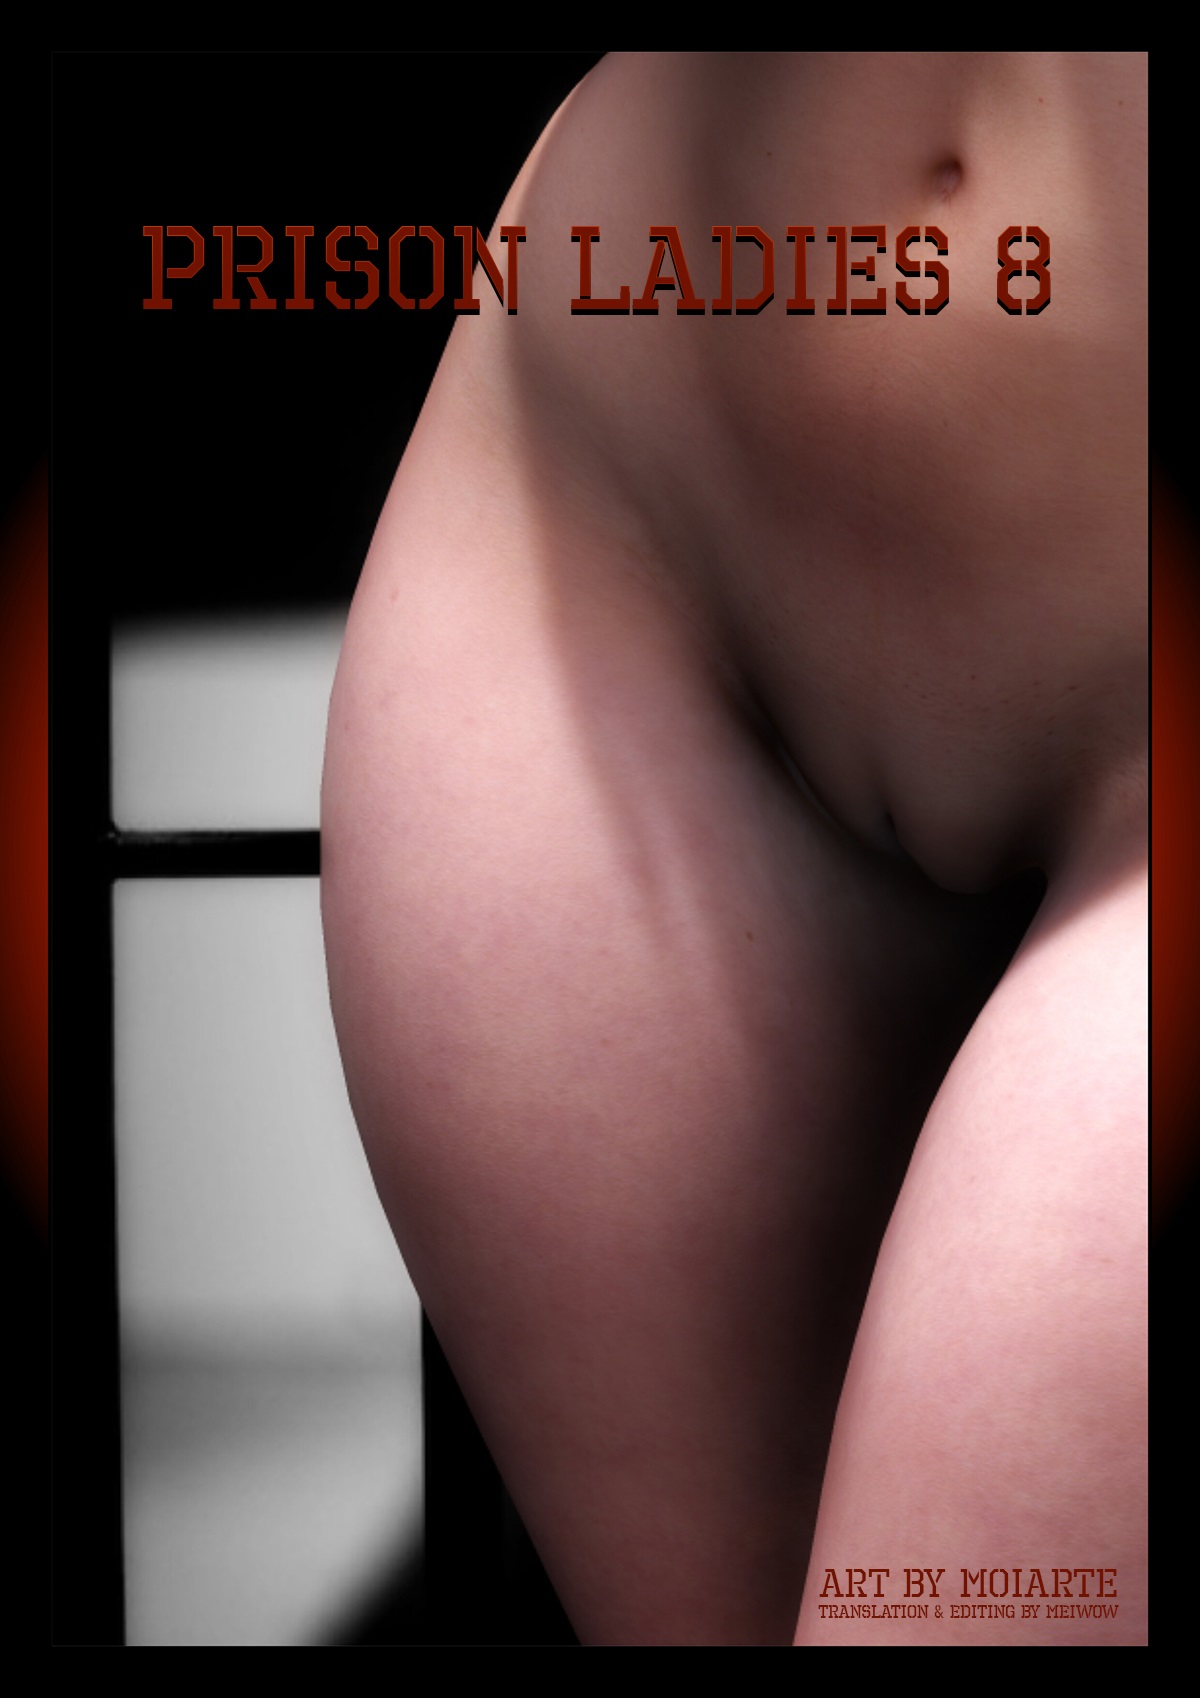 Porn Comics - Prison Ladies 8 by Moiarte porn comics 8 muses